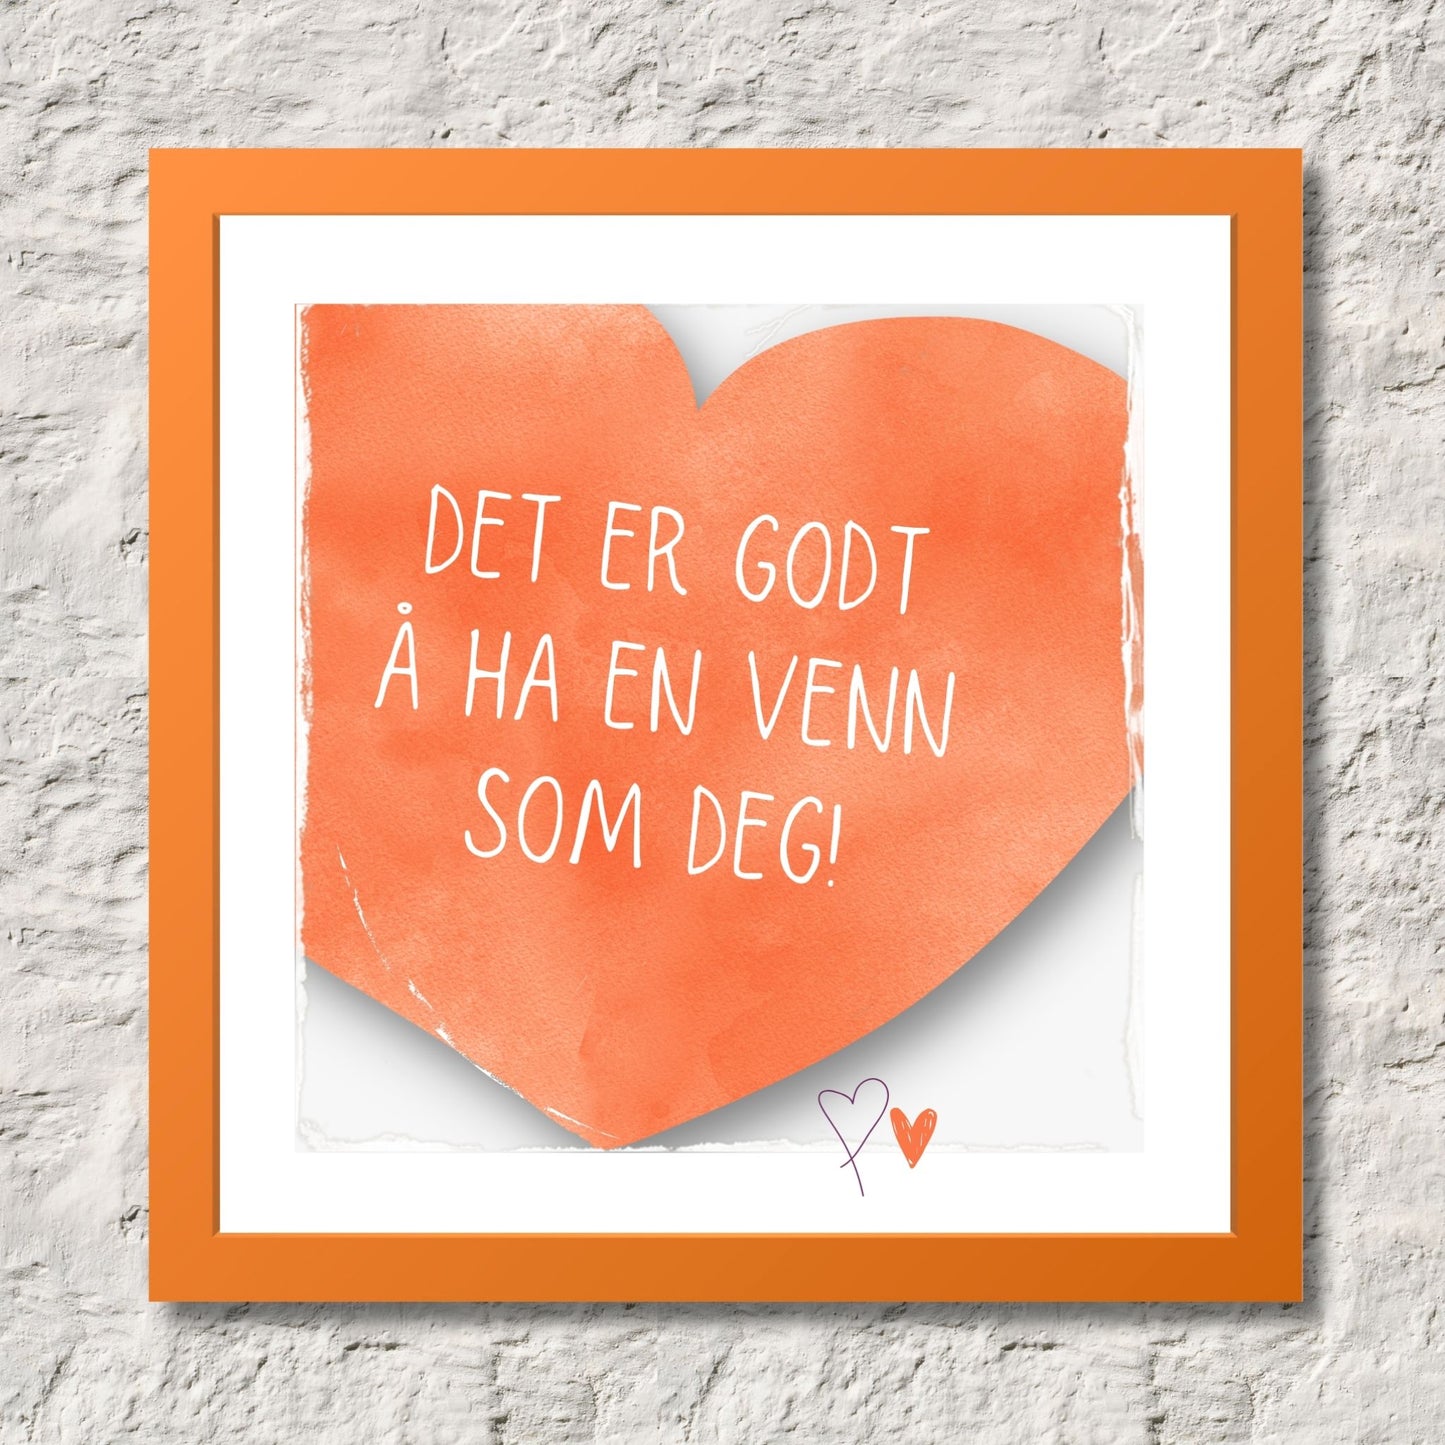 Plakat med oransje hjerte og tekst "Det er godt å ha en venn som deg". Med hvit kant på 1,5 cm. Illustrasjon viser plakat i oransje ramme.